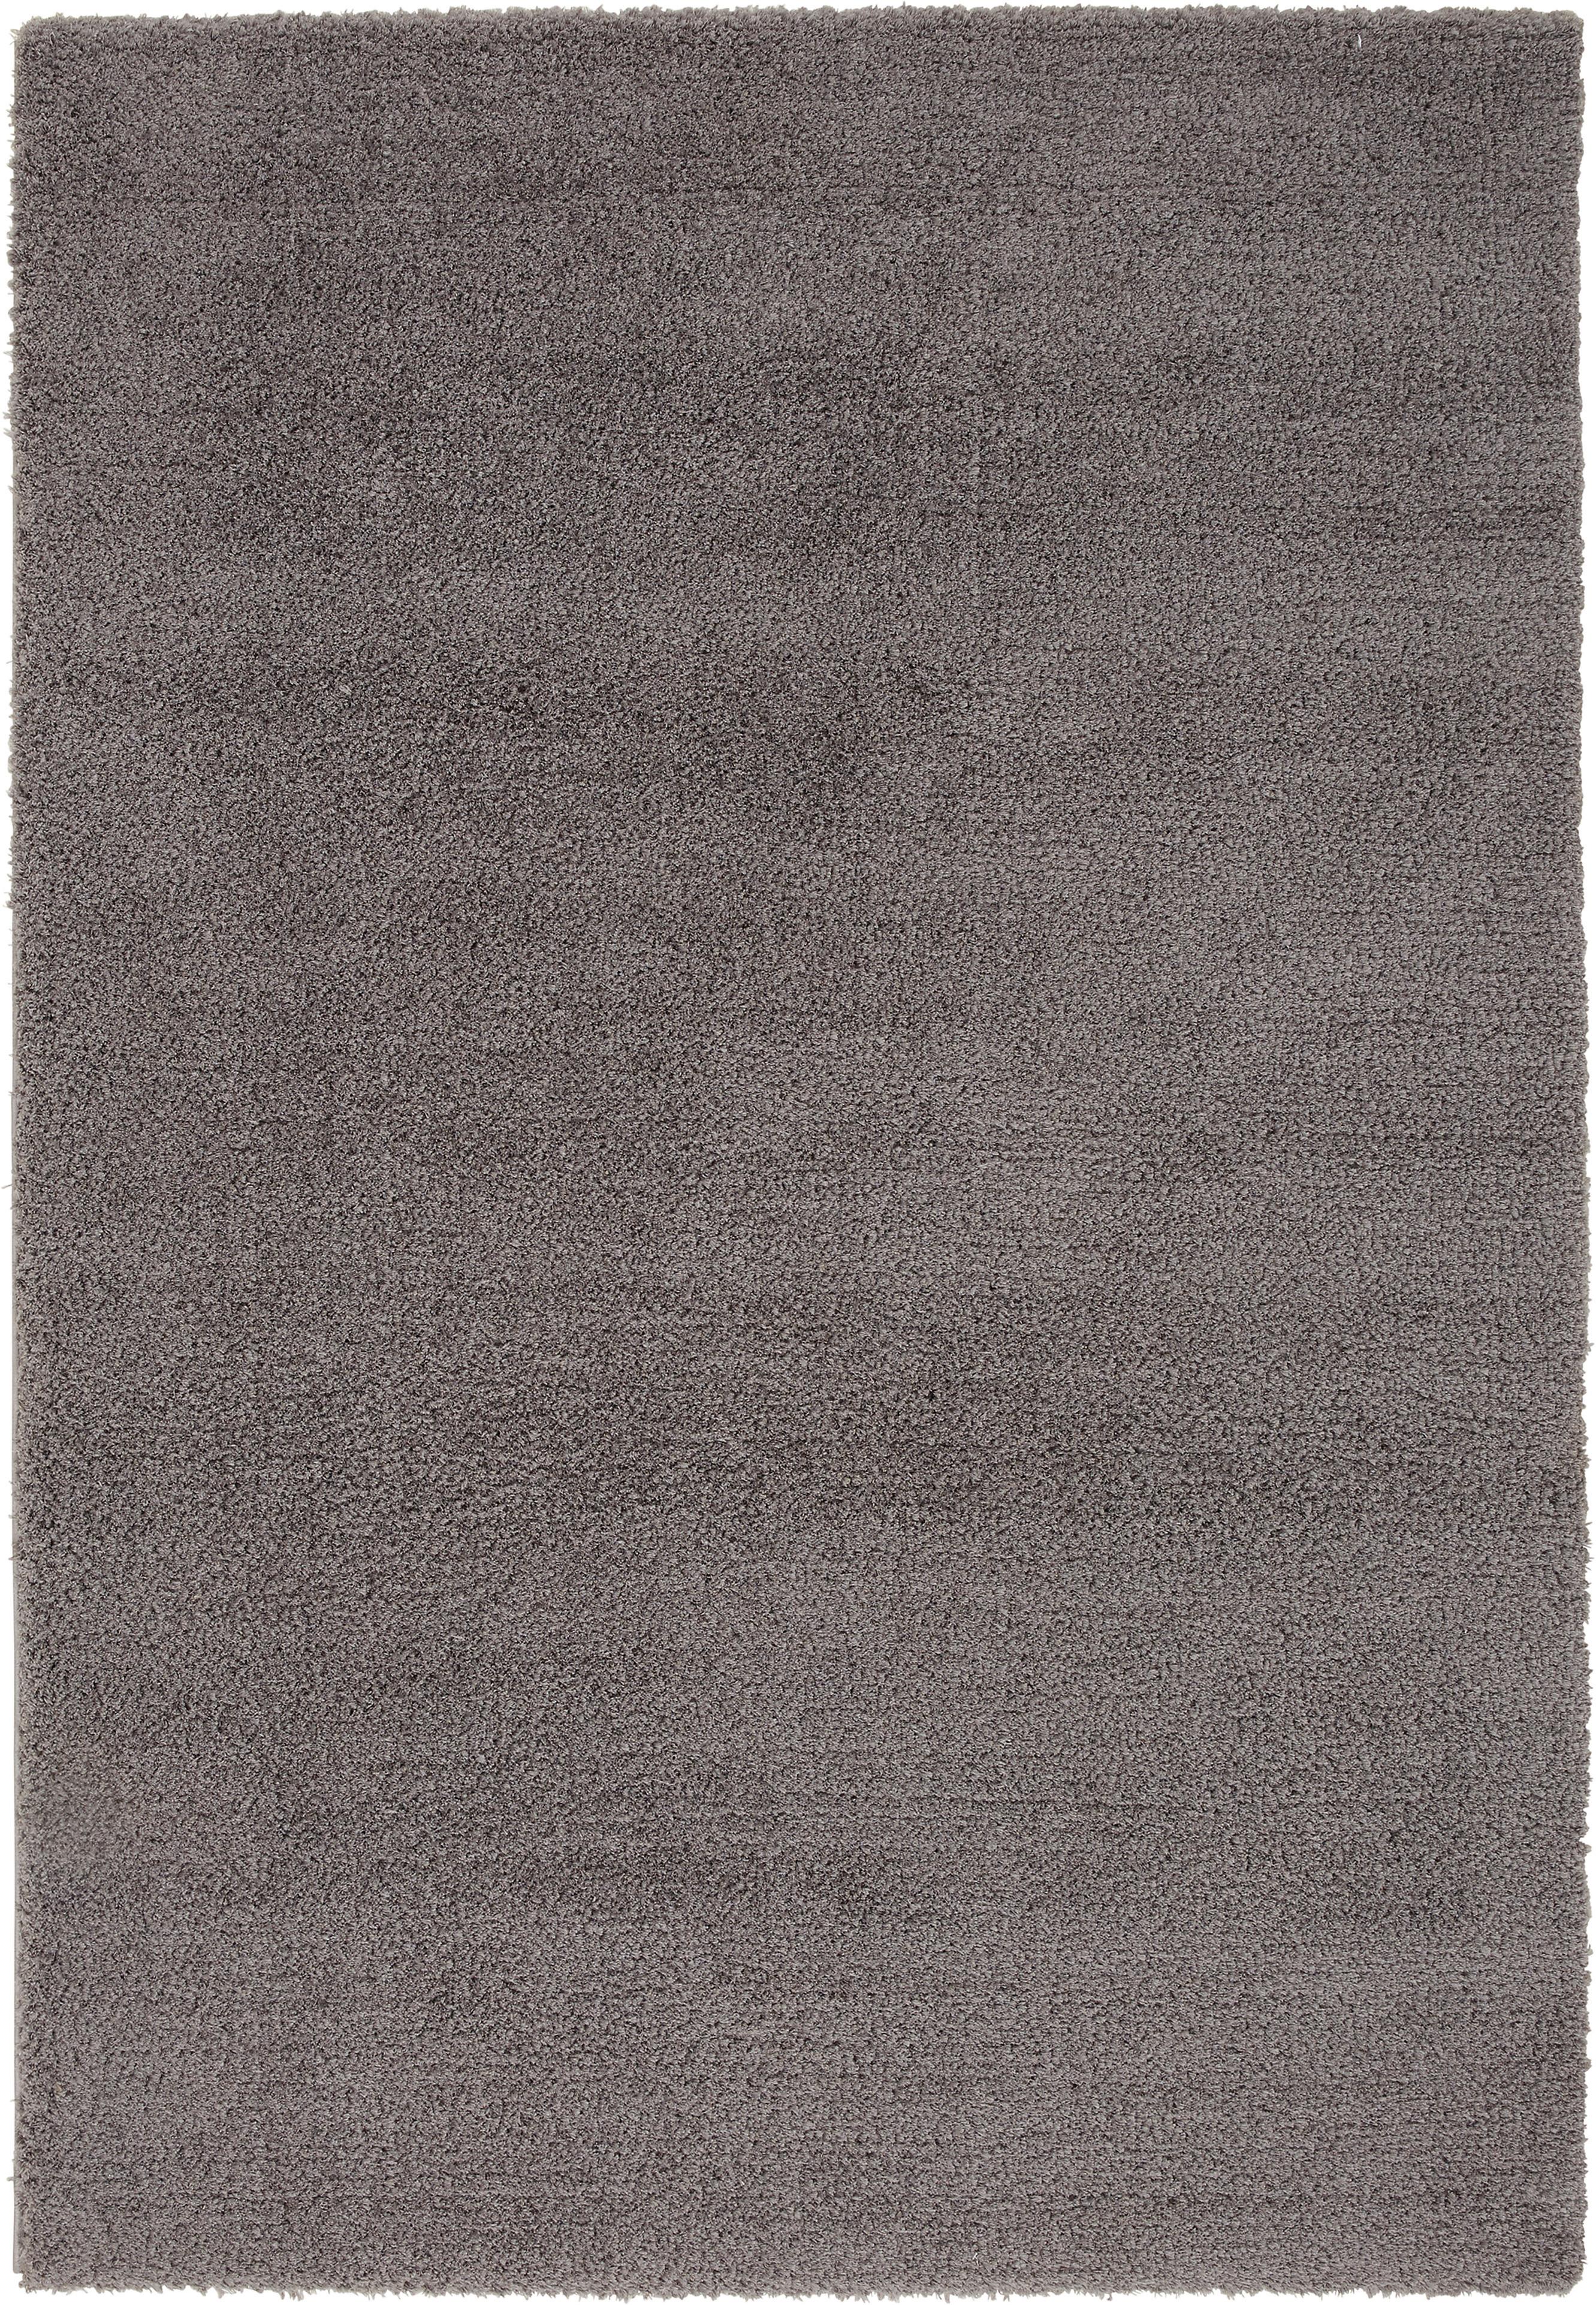 Shaggy Koberec Stefan 3, 160/230cm, Tm.šedá - tmavě šedá, Moderní, textil (160/230cm) - Modern Living